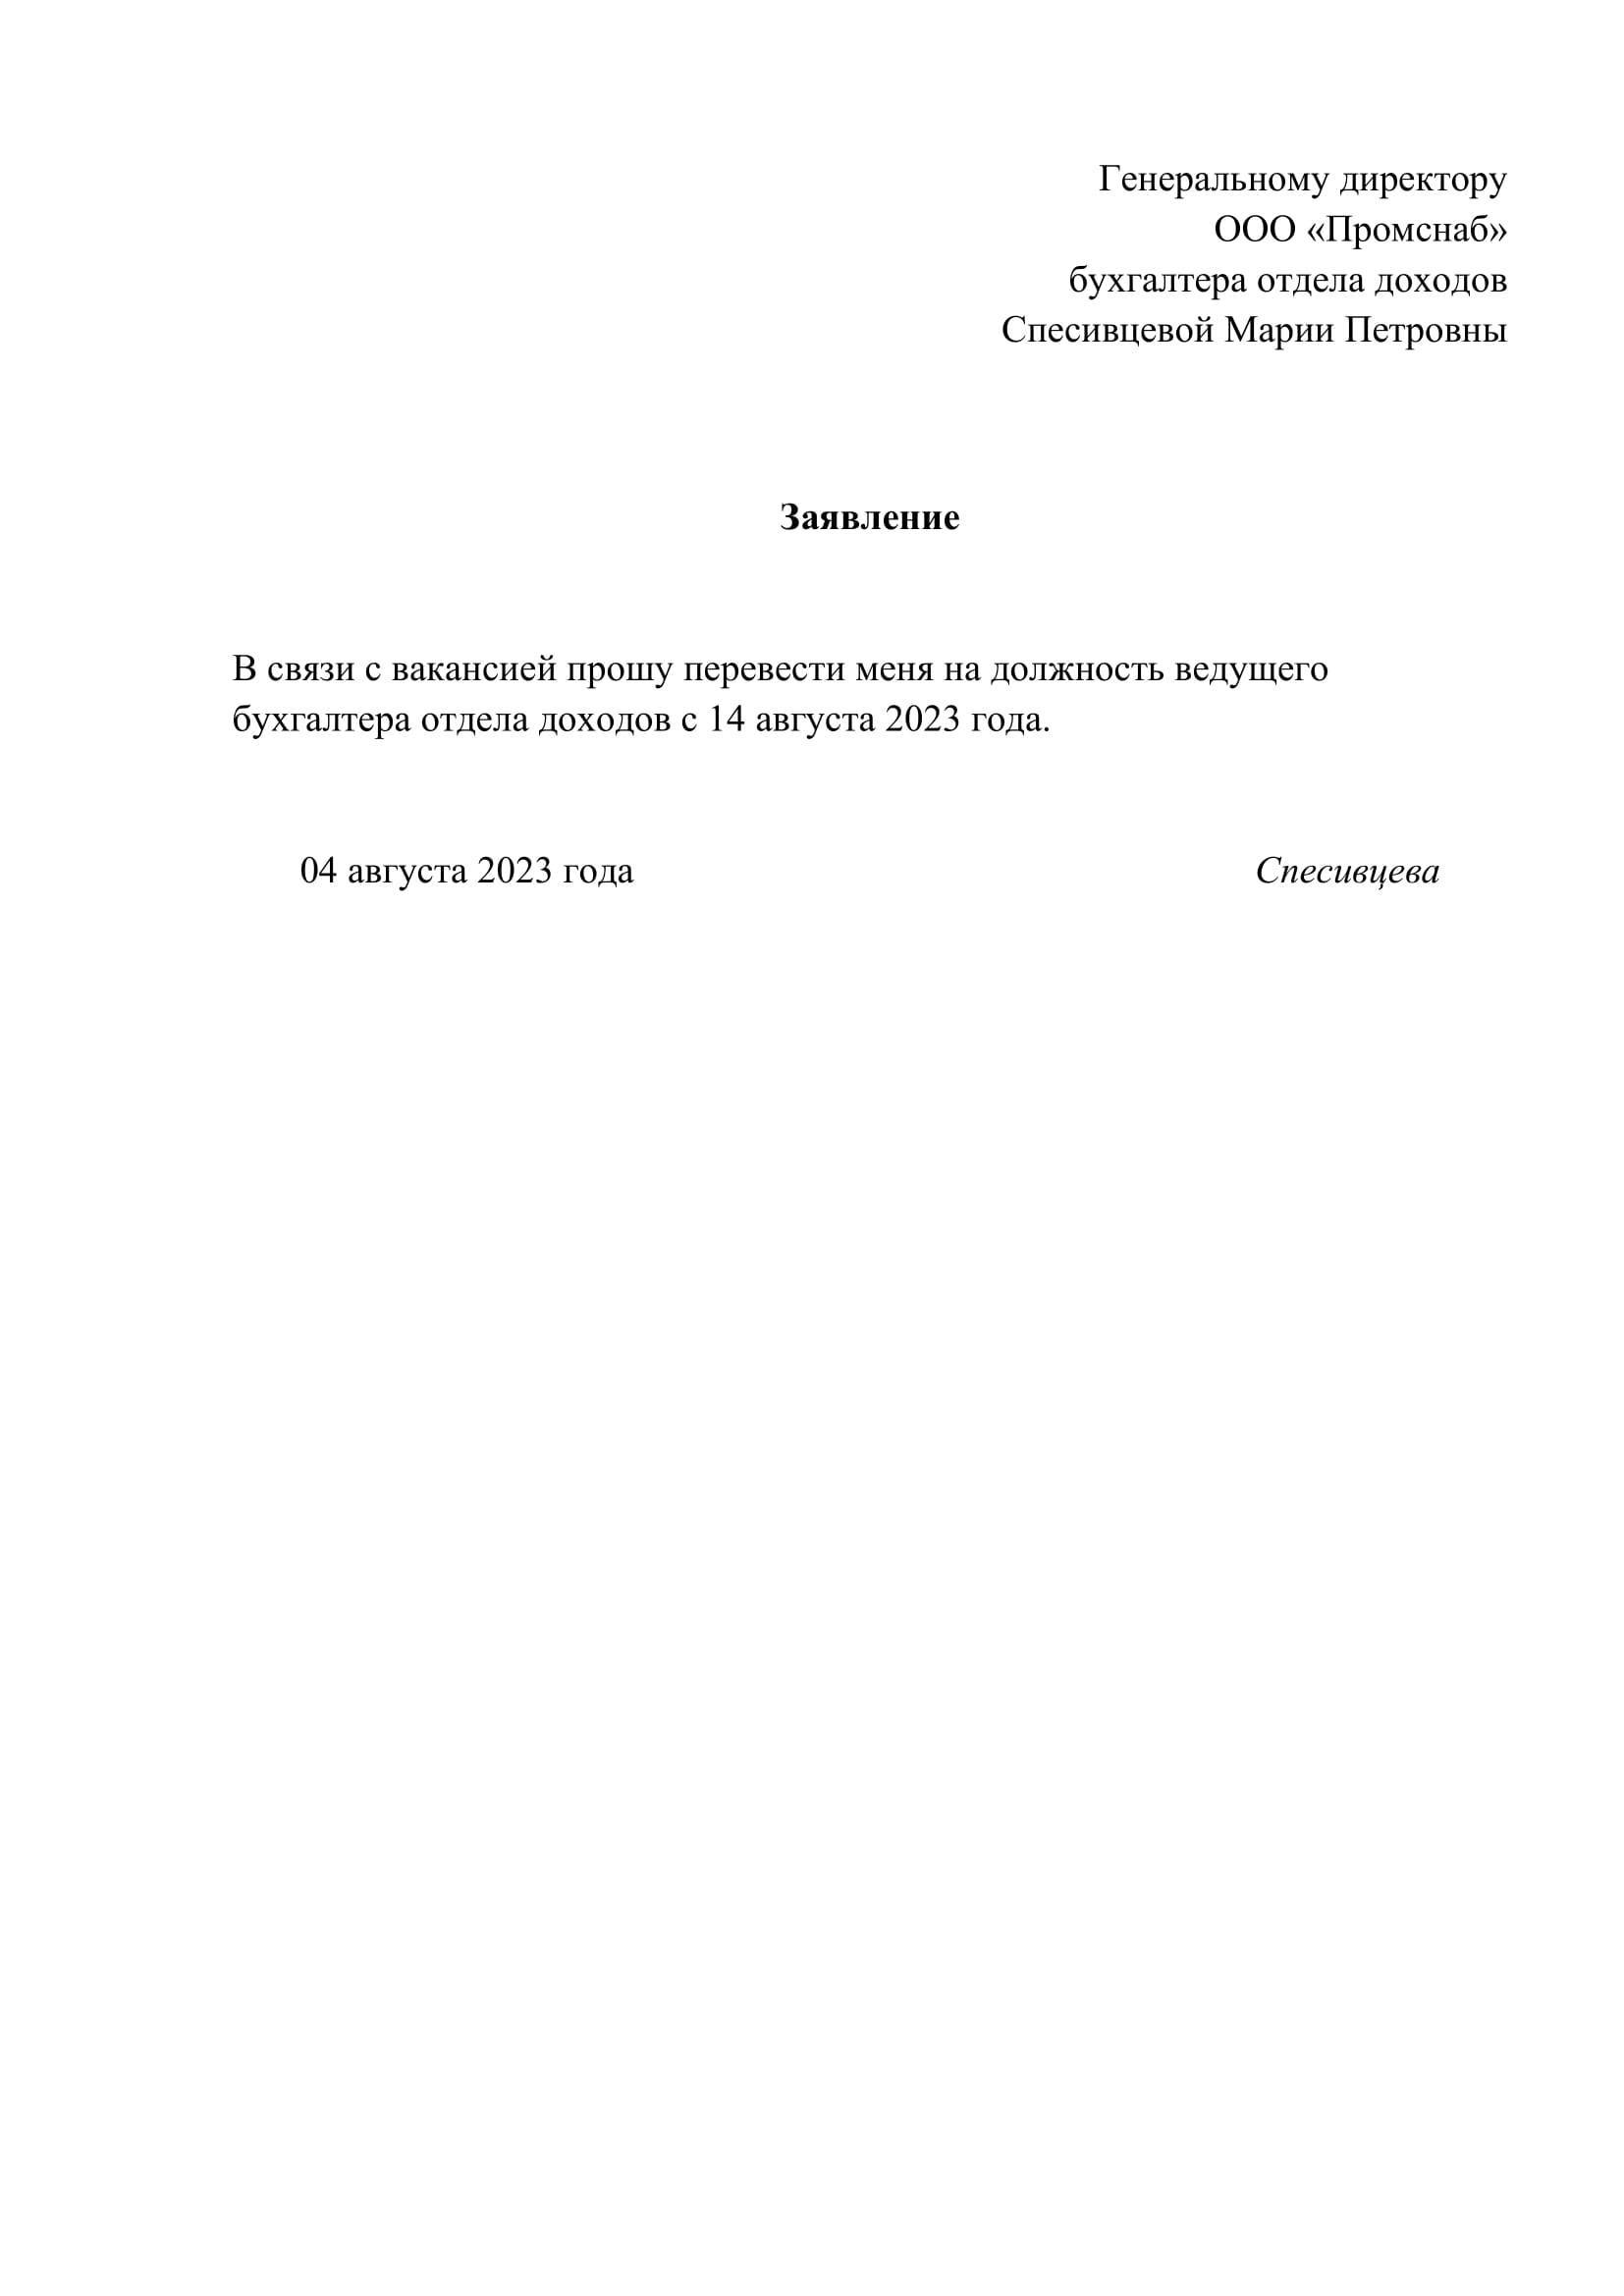 Заявление о переводе на другую должность (образец заполнения) - образец рб 2022. белформа - бланки документов, беларусь